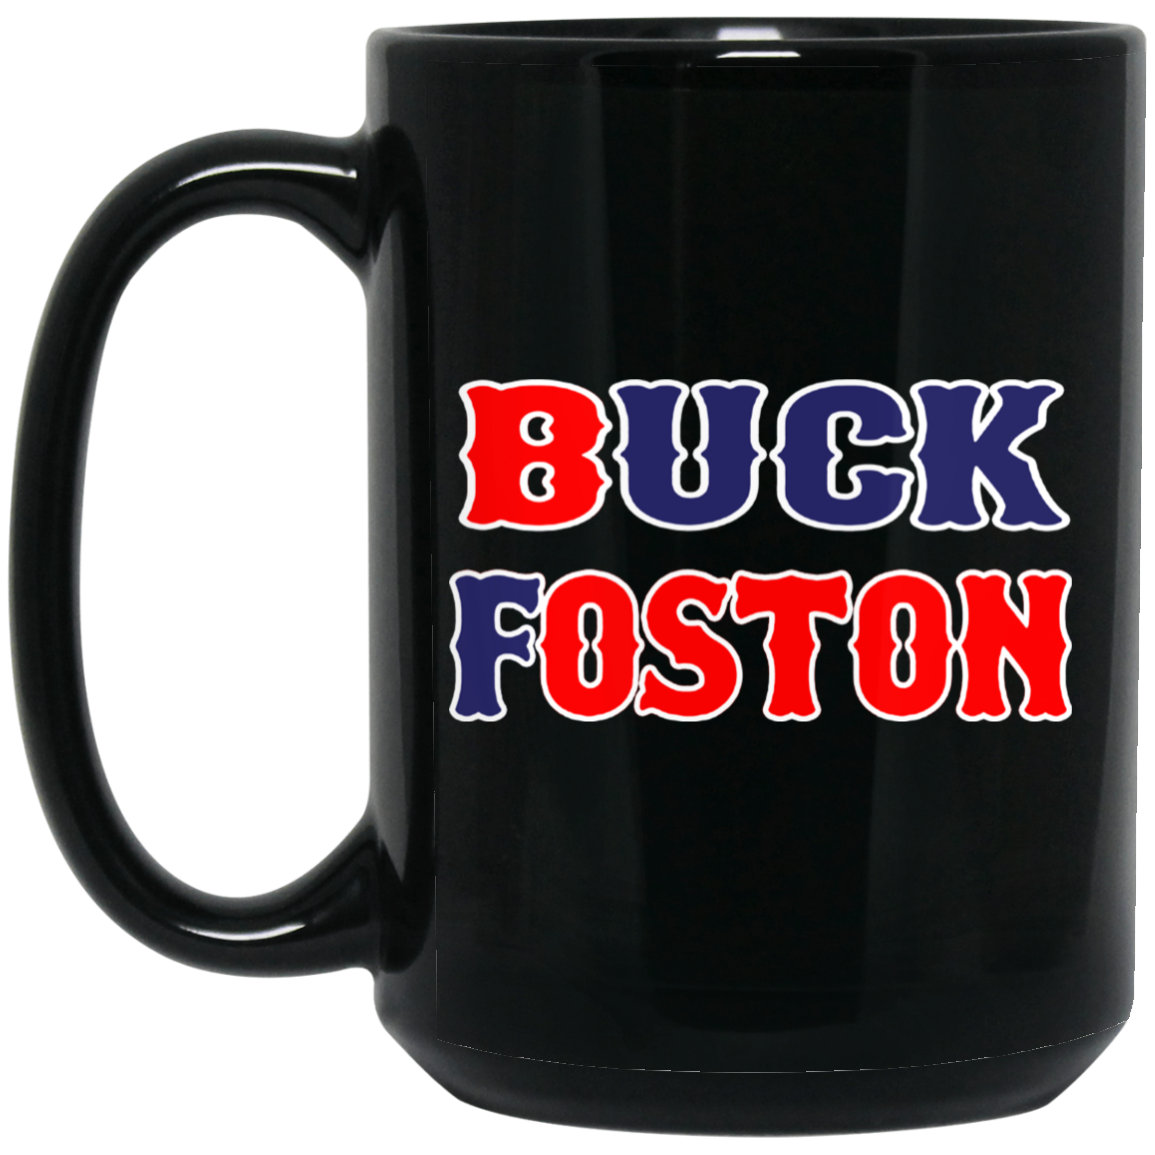 ArtichokeUSA Custom Design. BUCK FOSTON. 15 oz. Black Mug